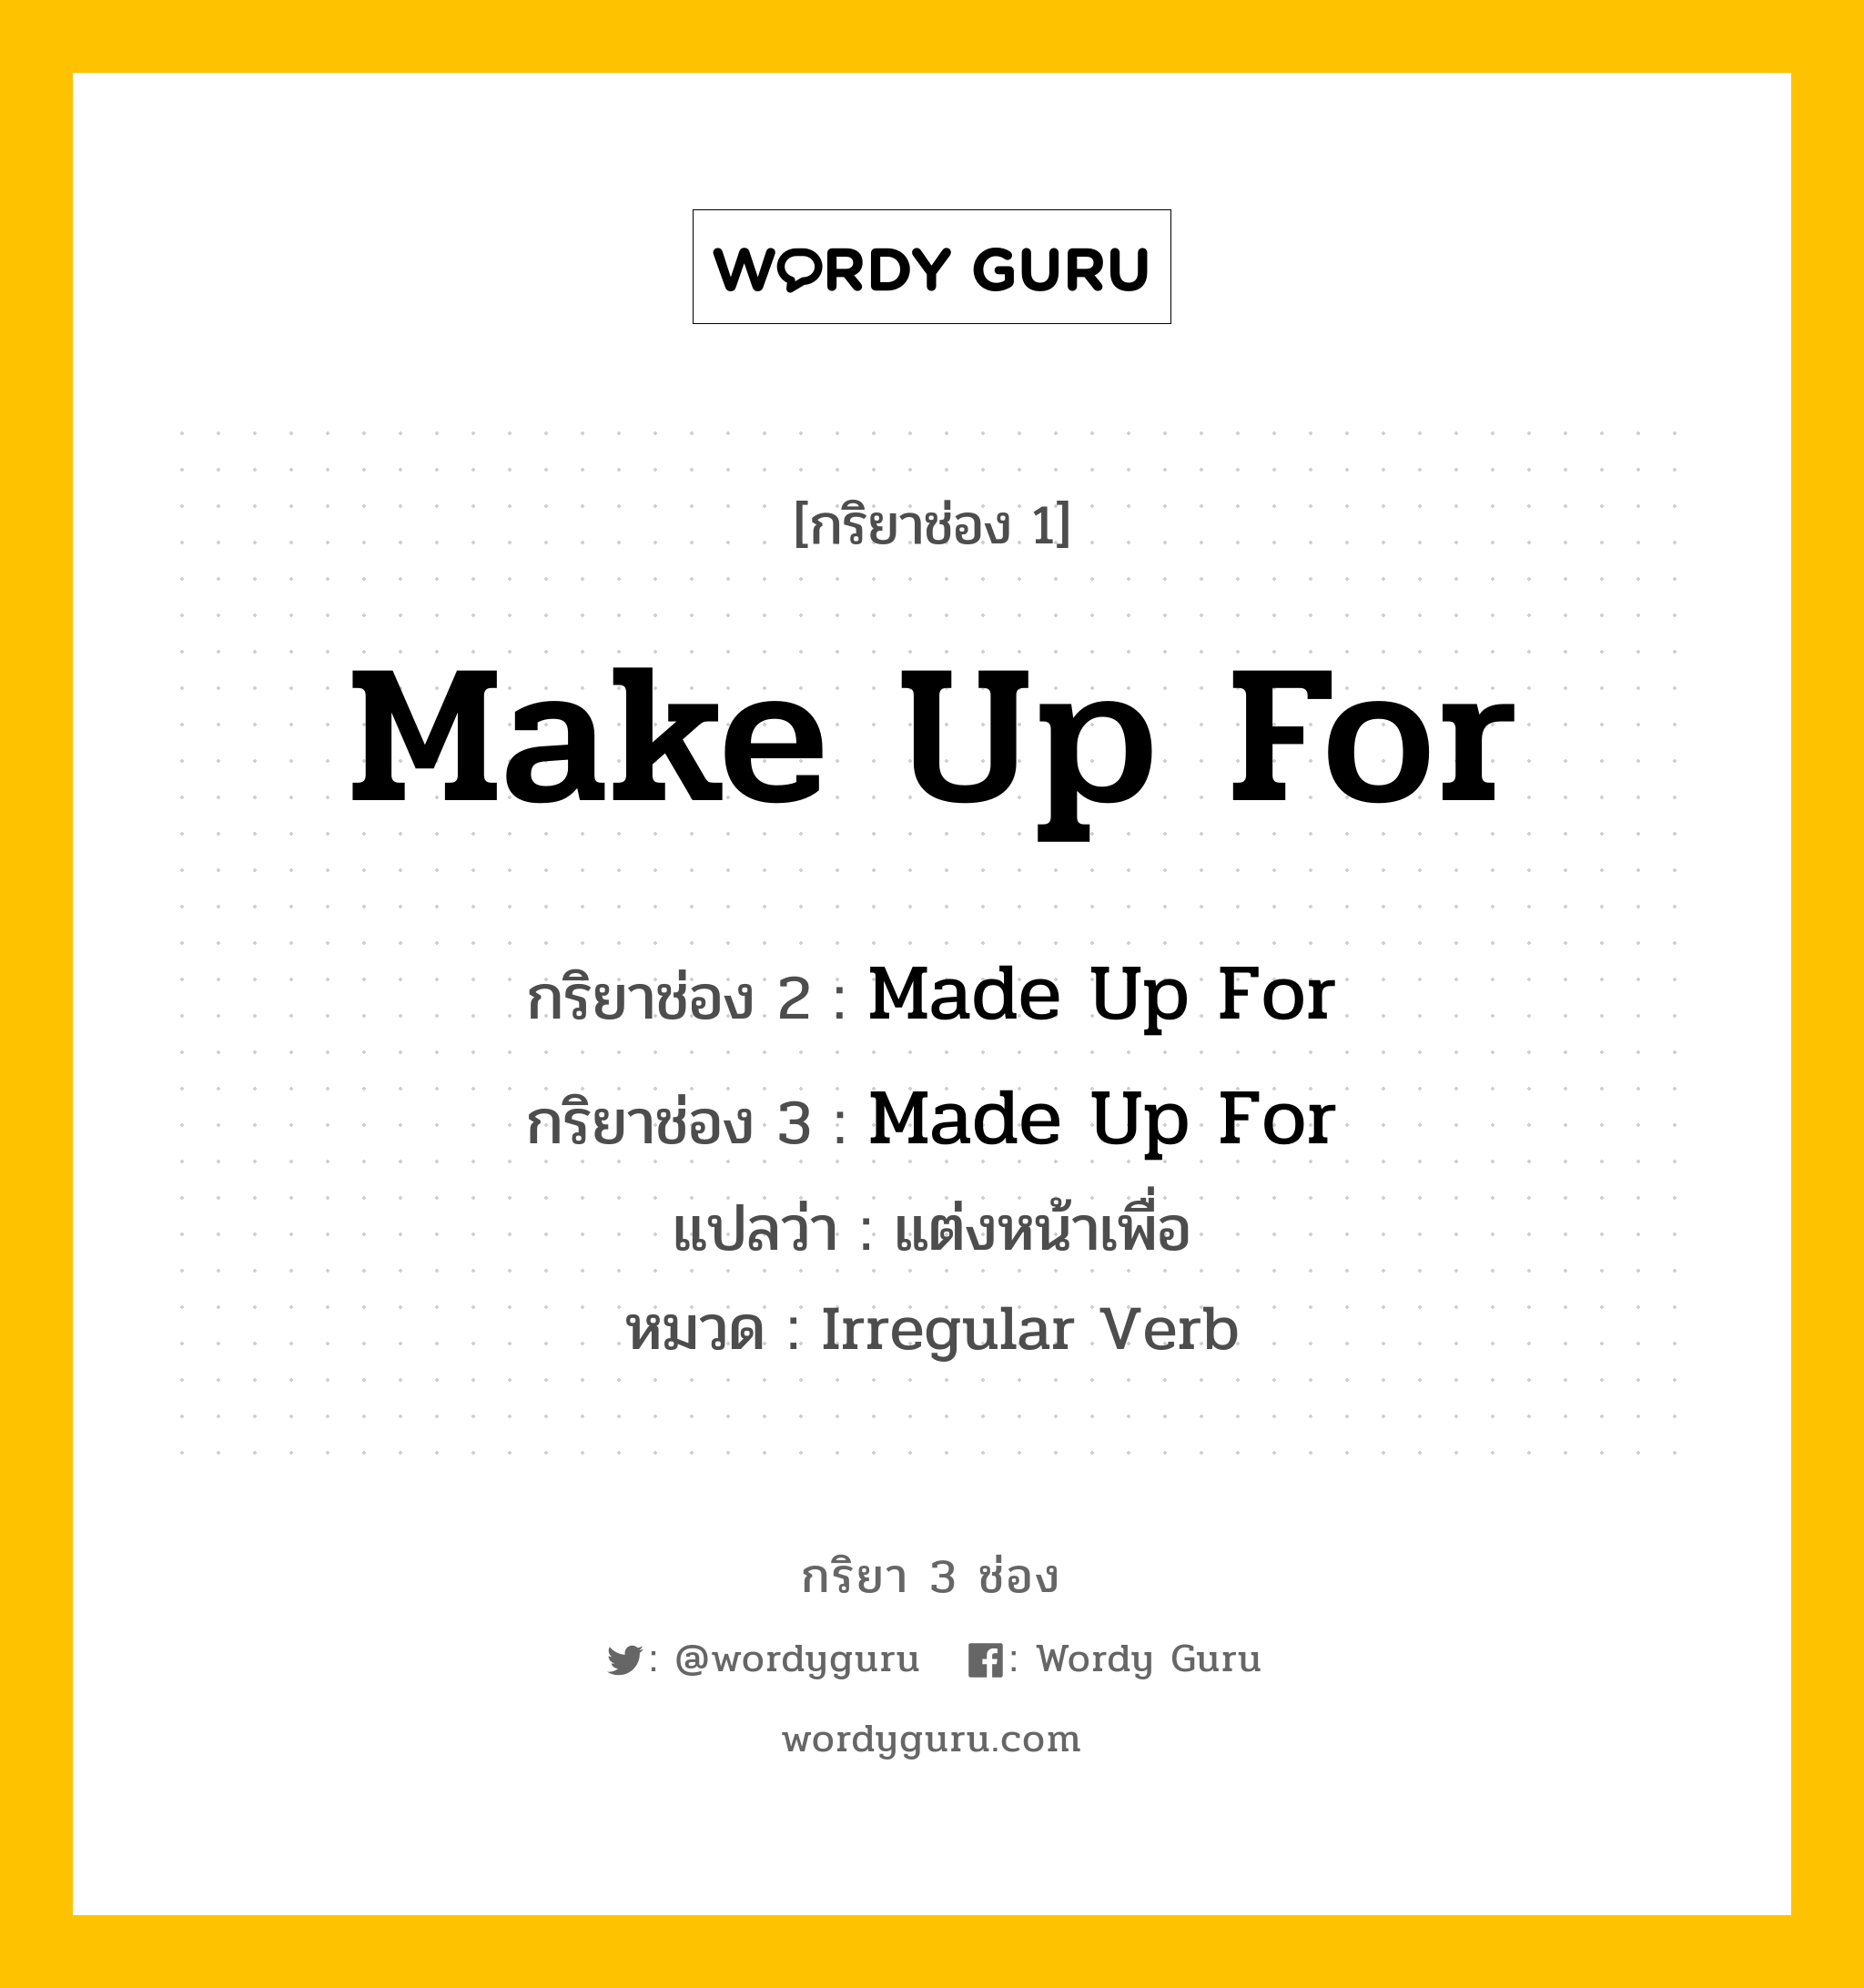 กริยา 3 ช่อง: Make Up For ช่อง 2 Make Up For ช่อง 3 คืออะไร, กริยาช่อง 1 Make Up For กริยาช่อง 2 Made Up For กริยาช่อง 3 Made Up For แปลว่า แต่งหน้าเพื่อ หมวด Irregular Verb หมวด Irregular Verb